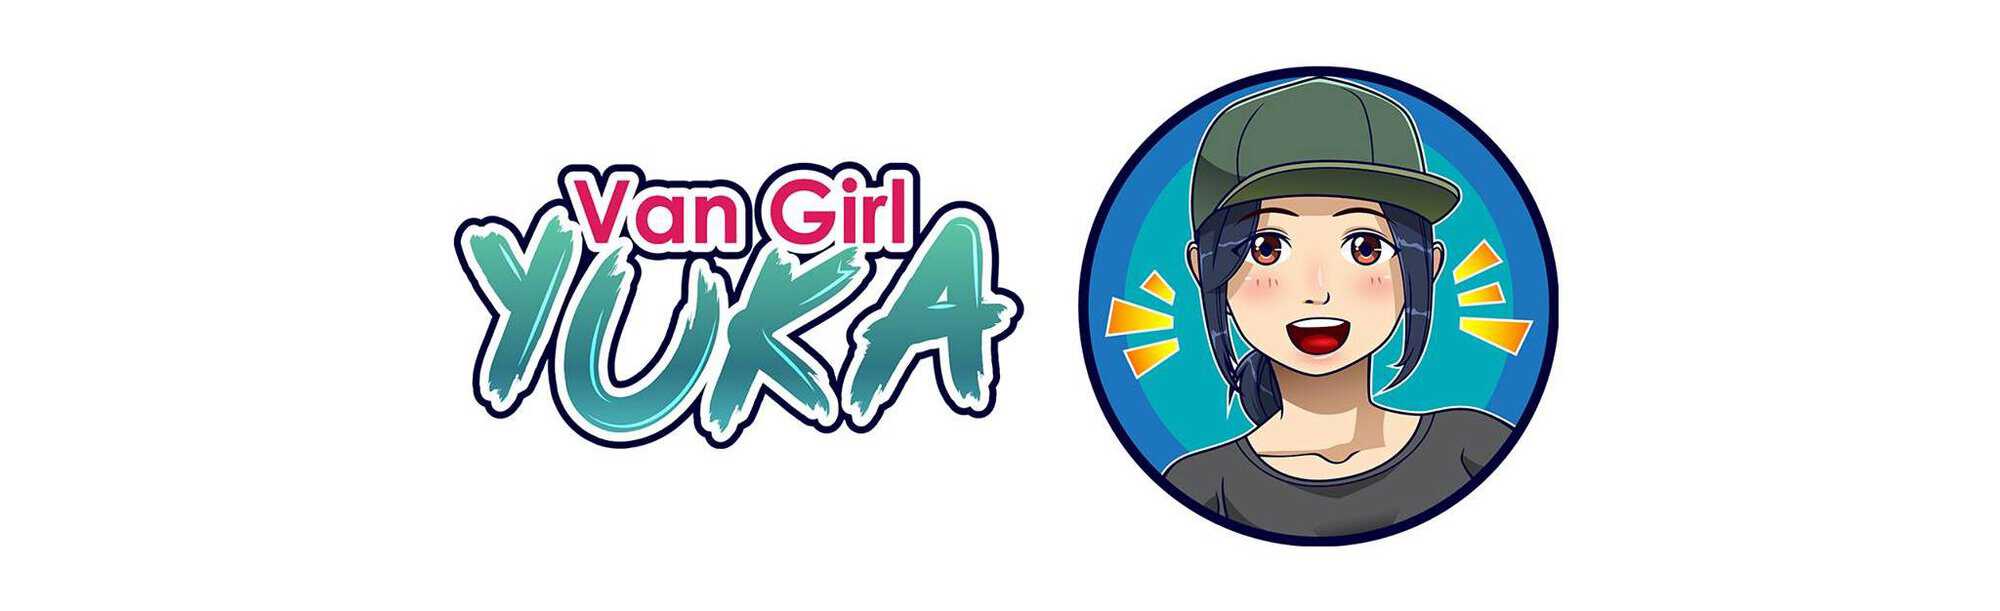 Van Girl Yuka Logo